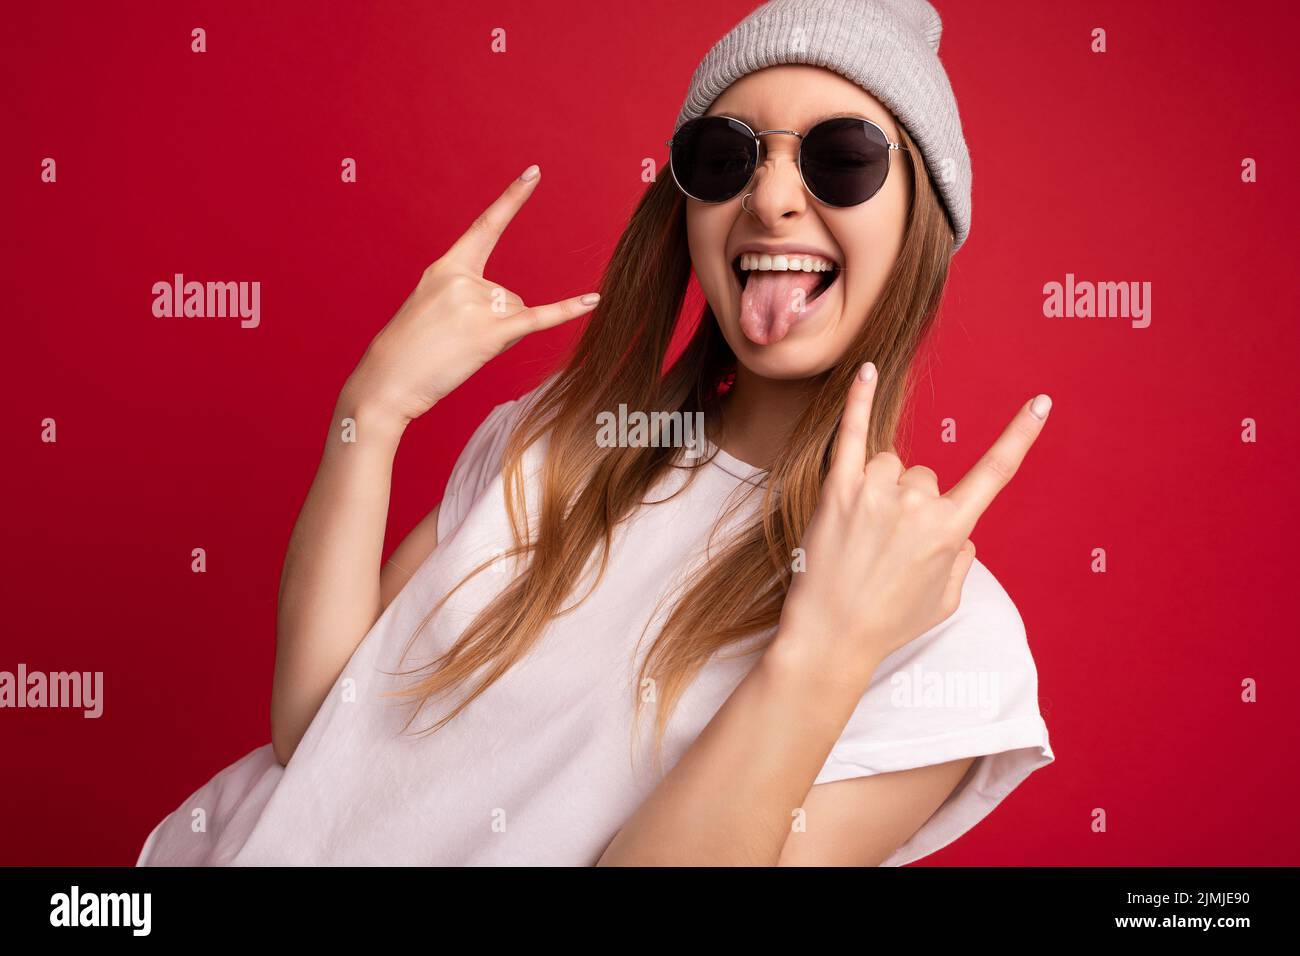 Portrait Foto von jungen emotionalen positiv glücklich lustig lachen schöne attraktive dunkelblonde Frau trägt beiläufige weiße t-sh Stockfoto